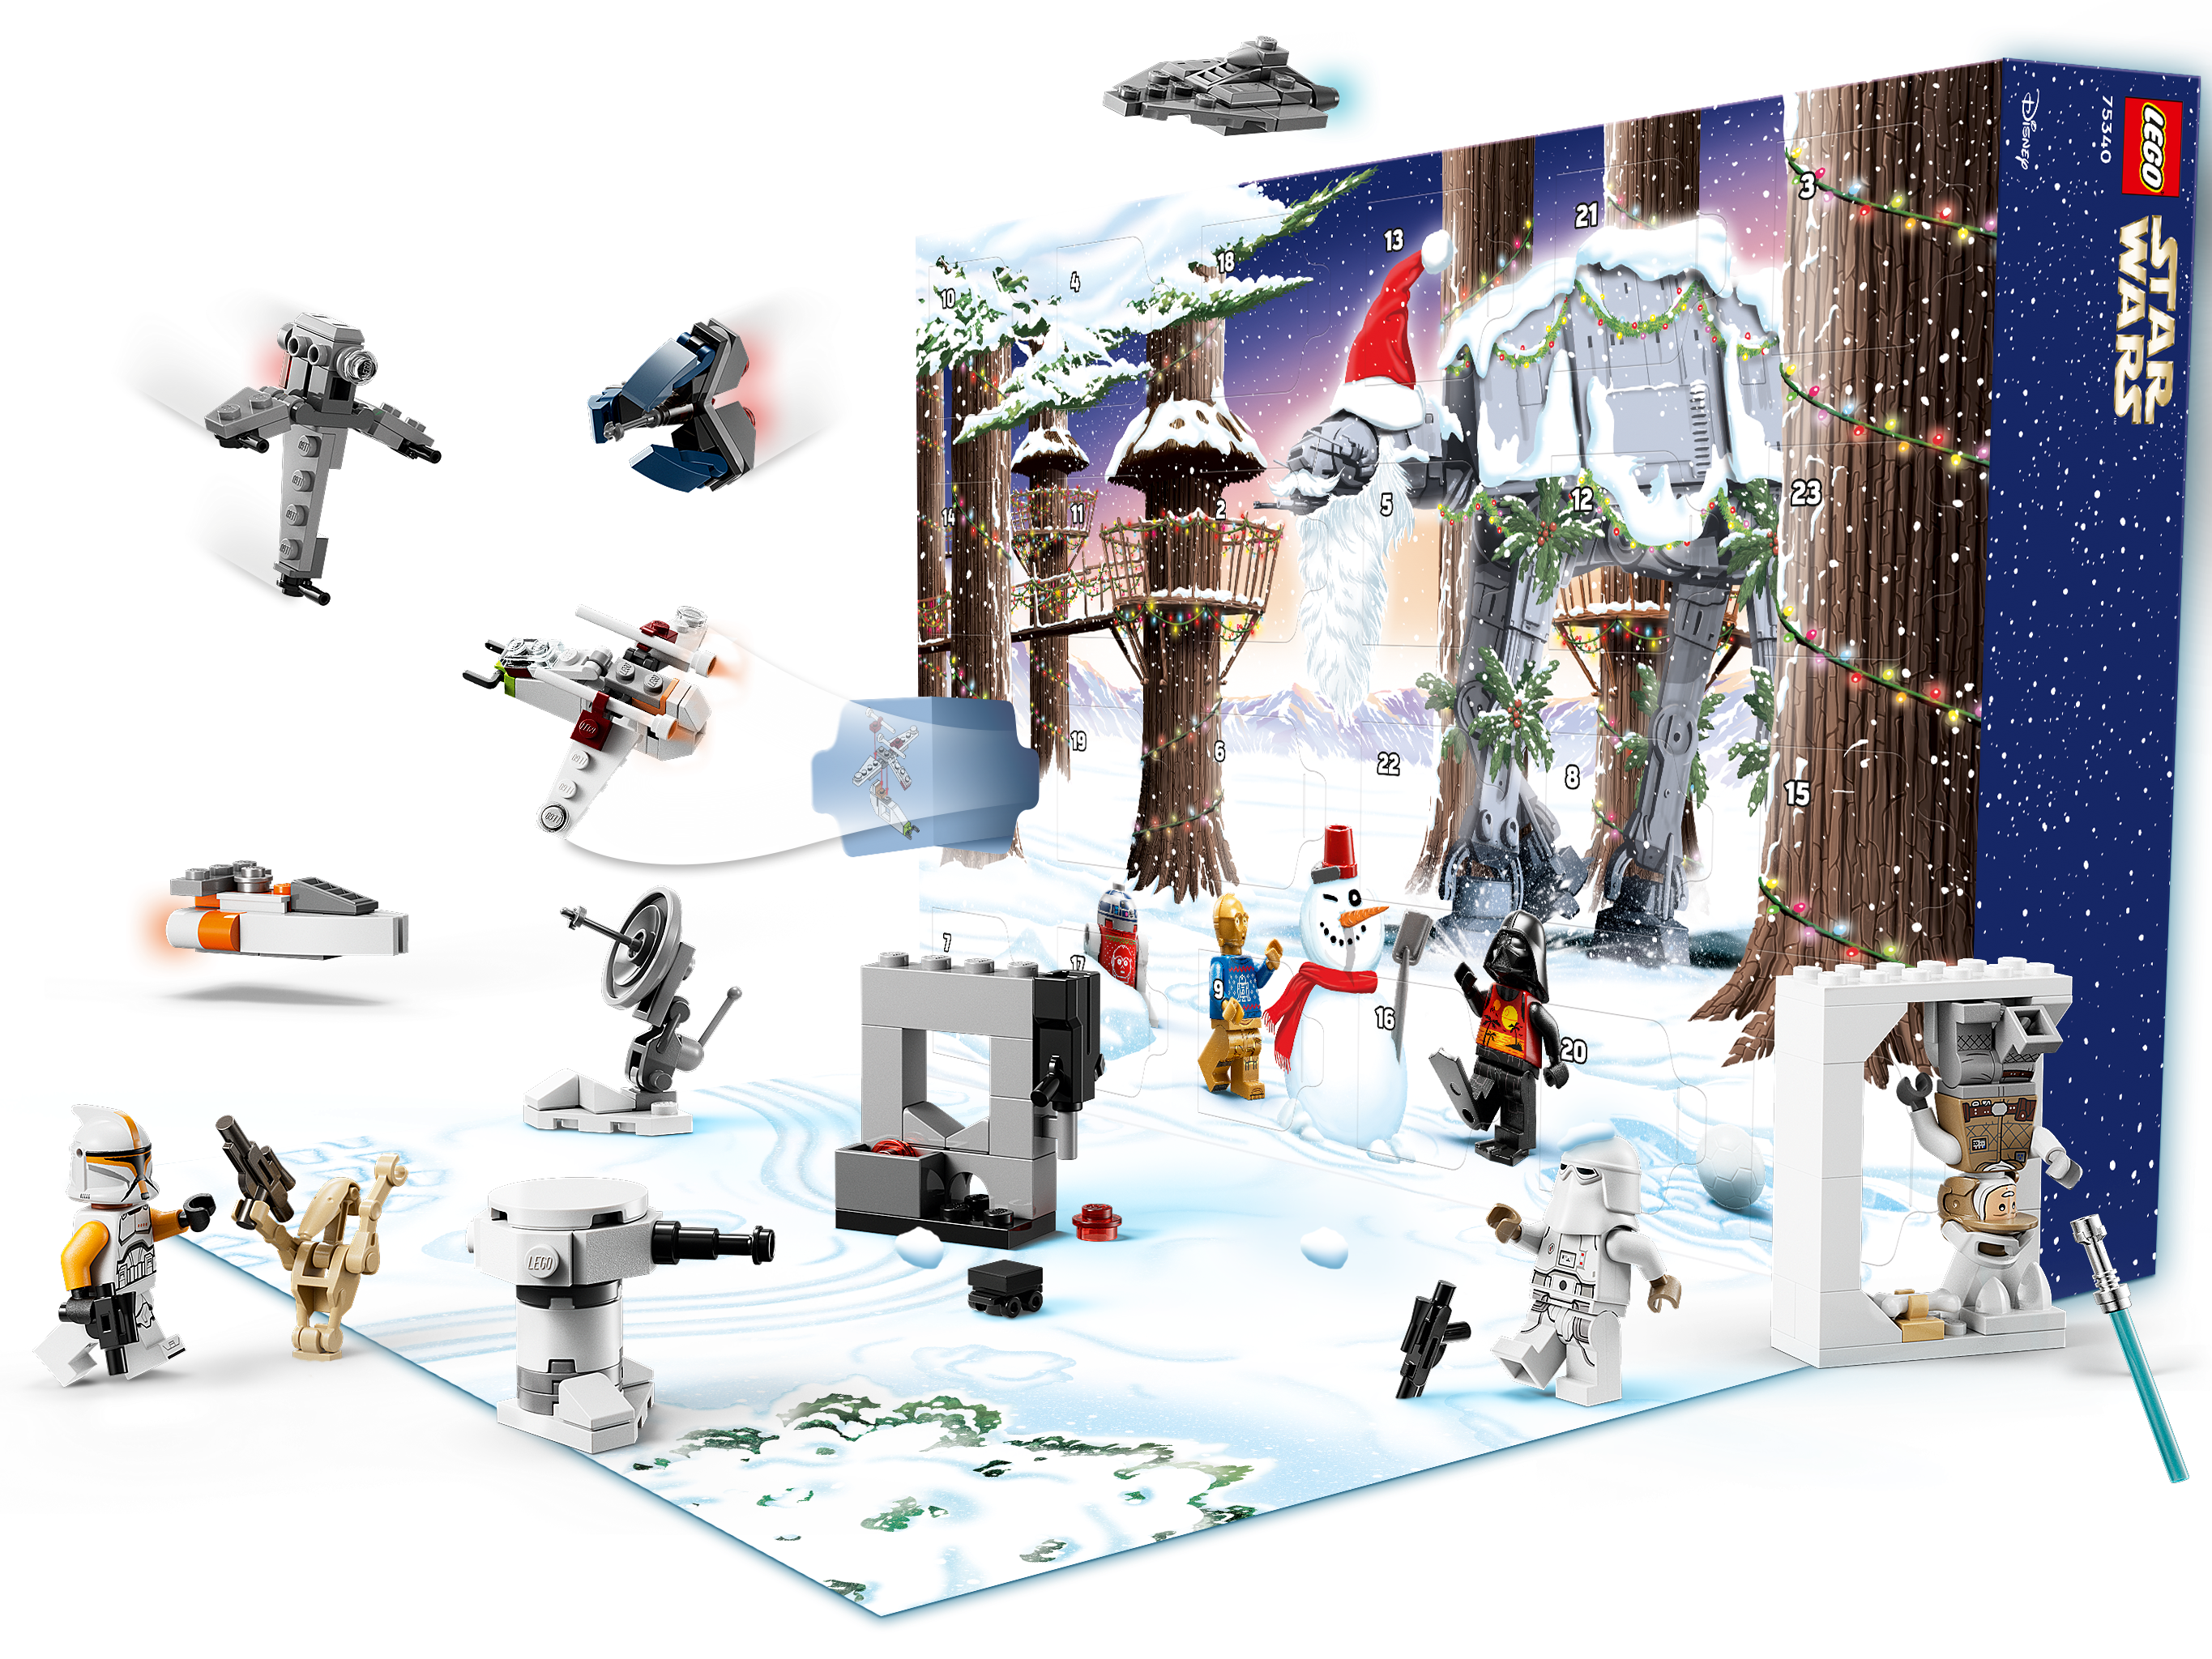 Cuadro Lego Star Wars - Zap+Zap - Tienda de regalos vintage